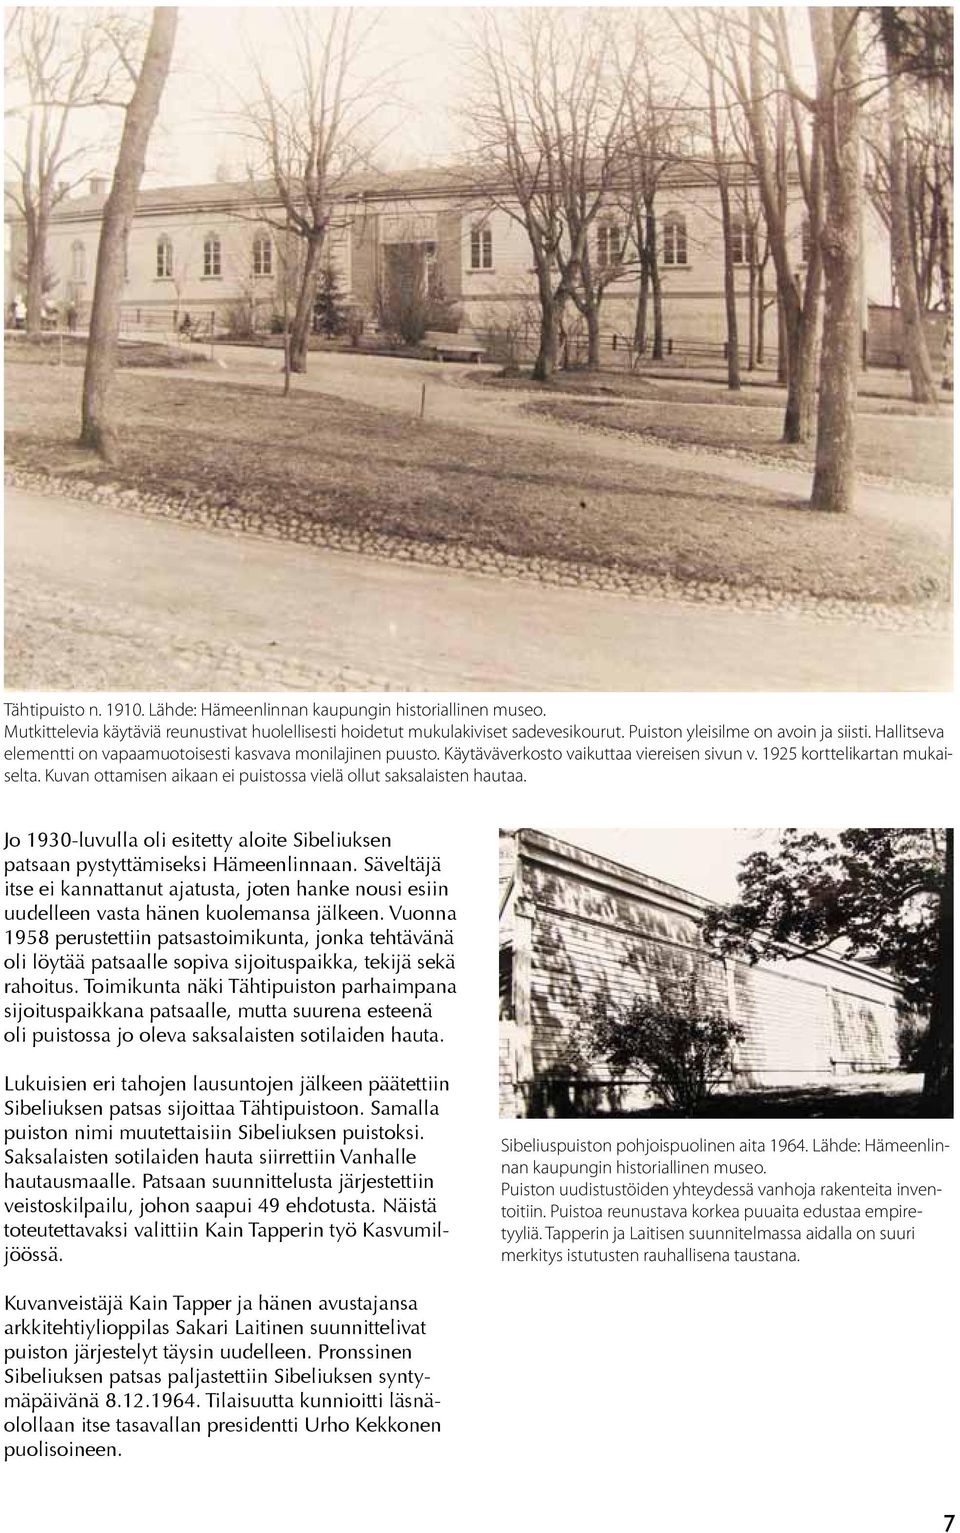 Kuvan ottamisen aikaan ei puistossa vielä ollut saksalaisten hautaa. Jo 1930-luvulla oli esitetty aloite Sibeliuksen patsaan pystyttämiseksi Hämeenlinnaan.